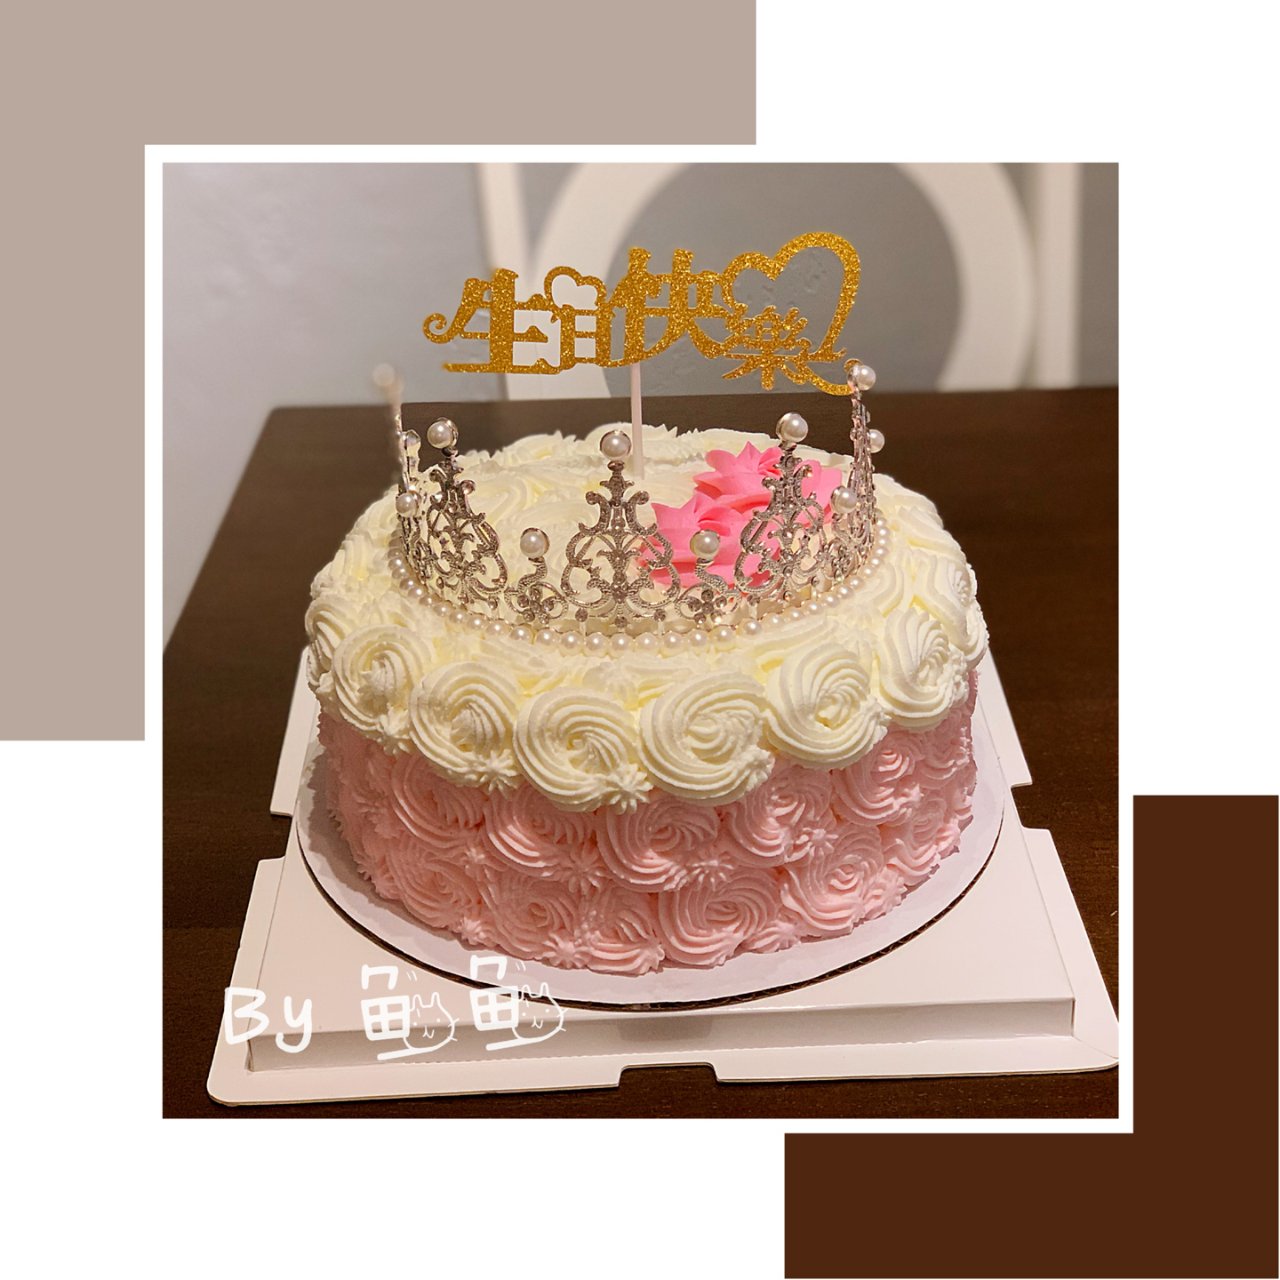 小公主的皇冠👑蛋糕🎂...